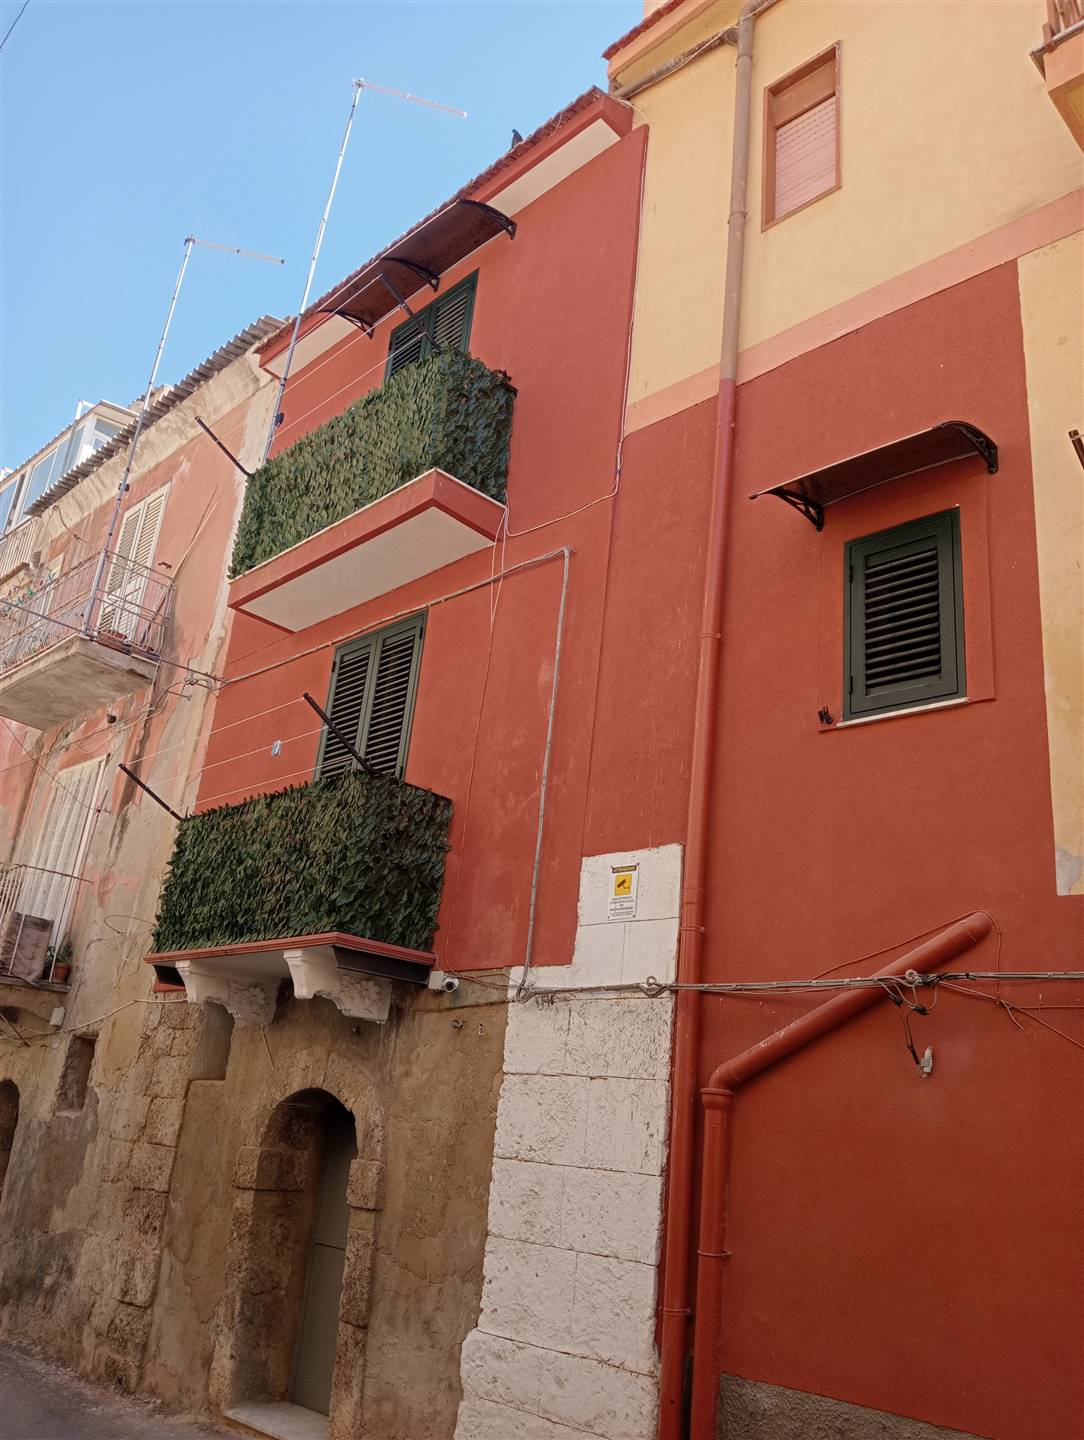 Palazzo / Stabile in vendita a Licata, 3 locali, zona Località: CENTRO, prezzo € 56.000 | PortaleAgenzieImmobiliari.it